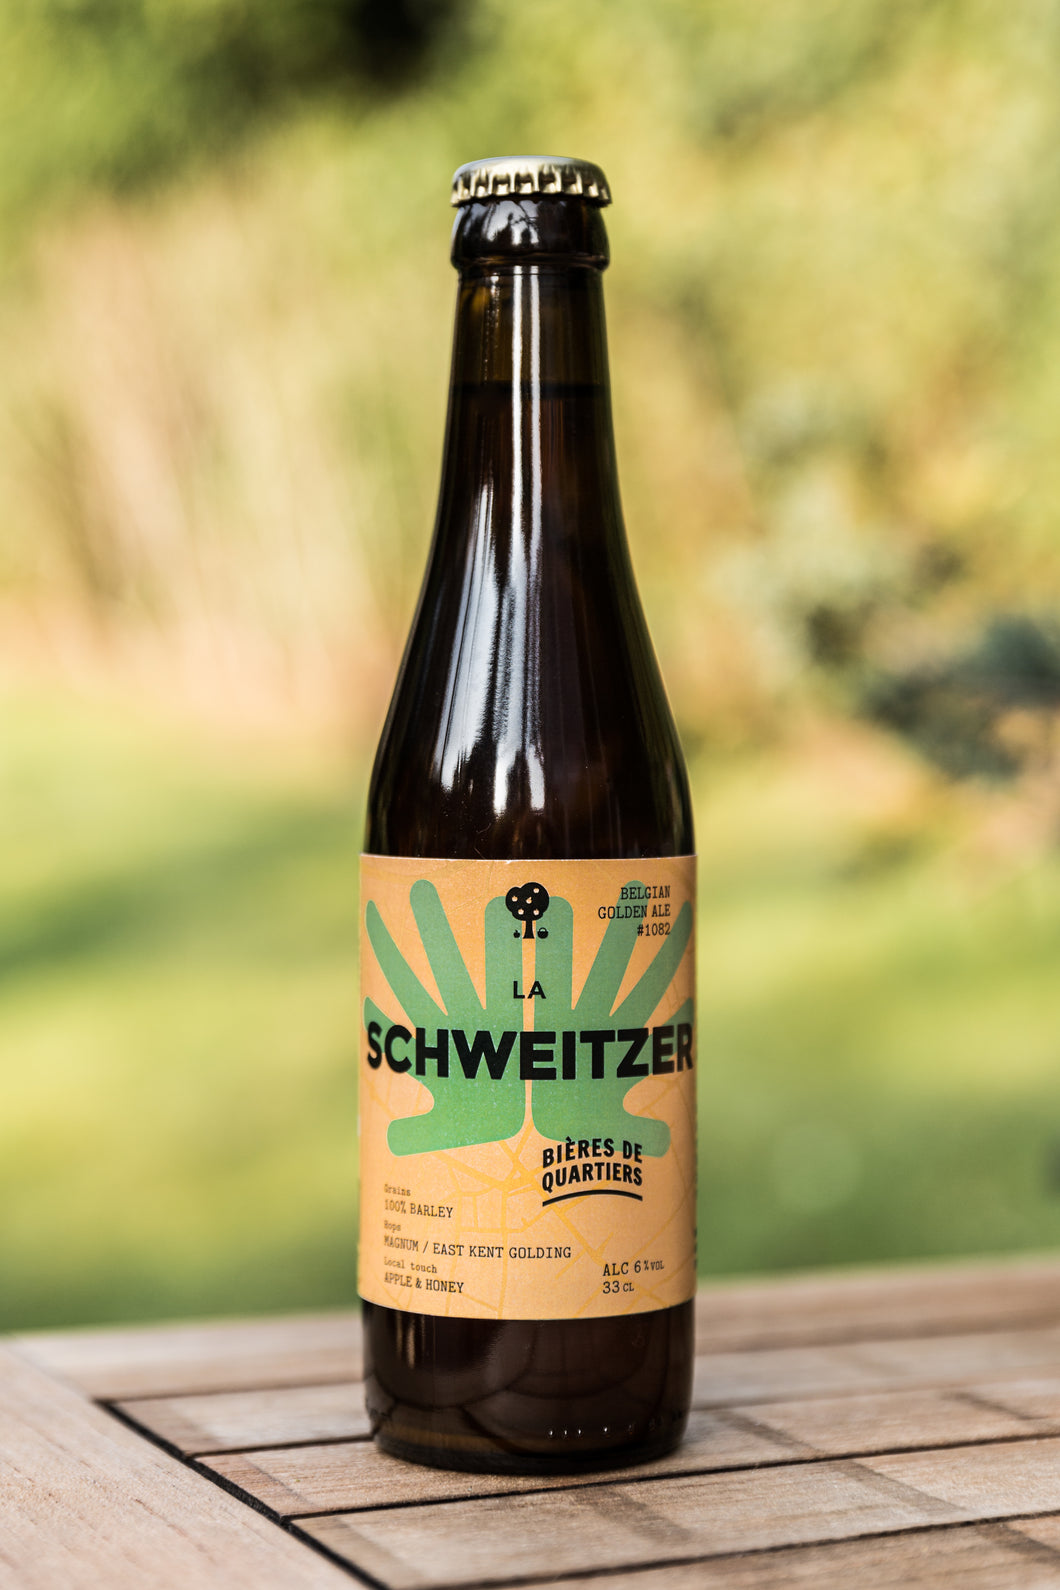 Bières de Quartiers 'La Schewitzer'